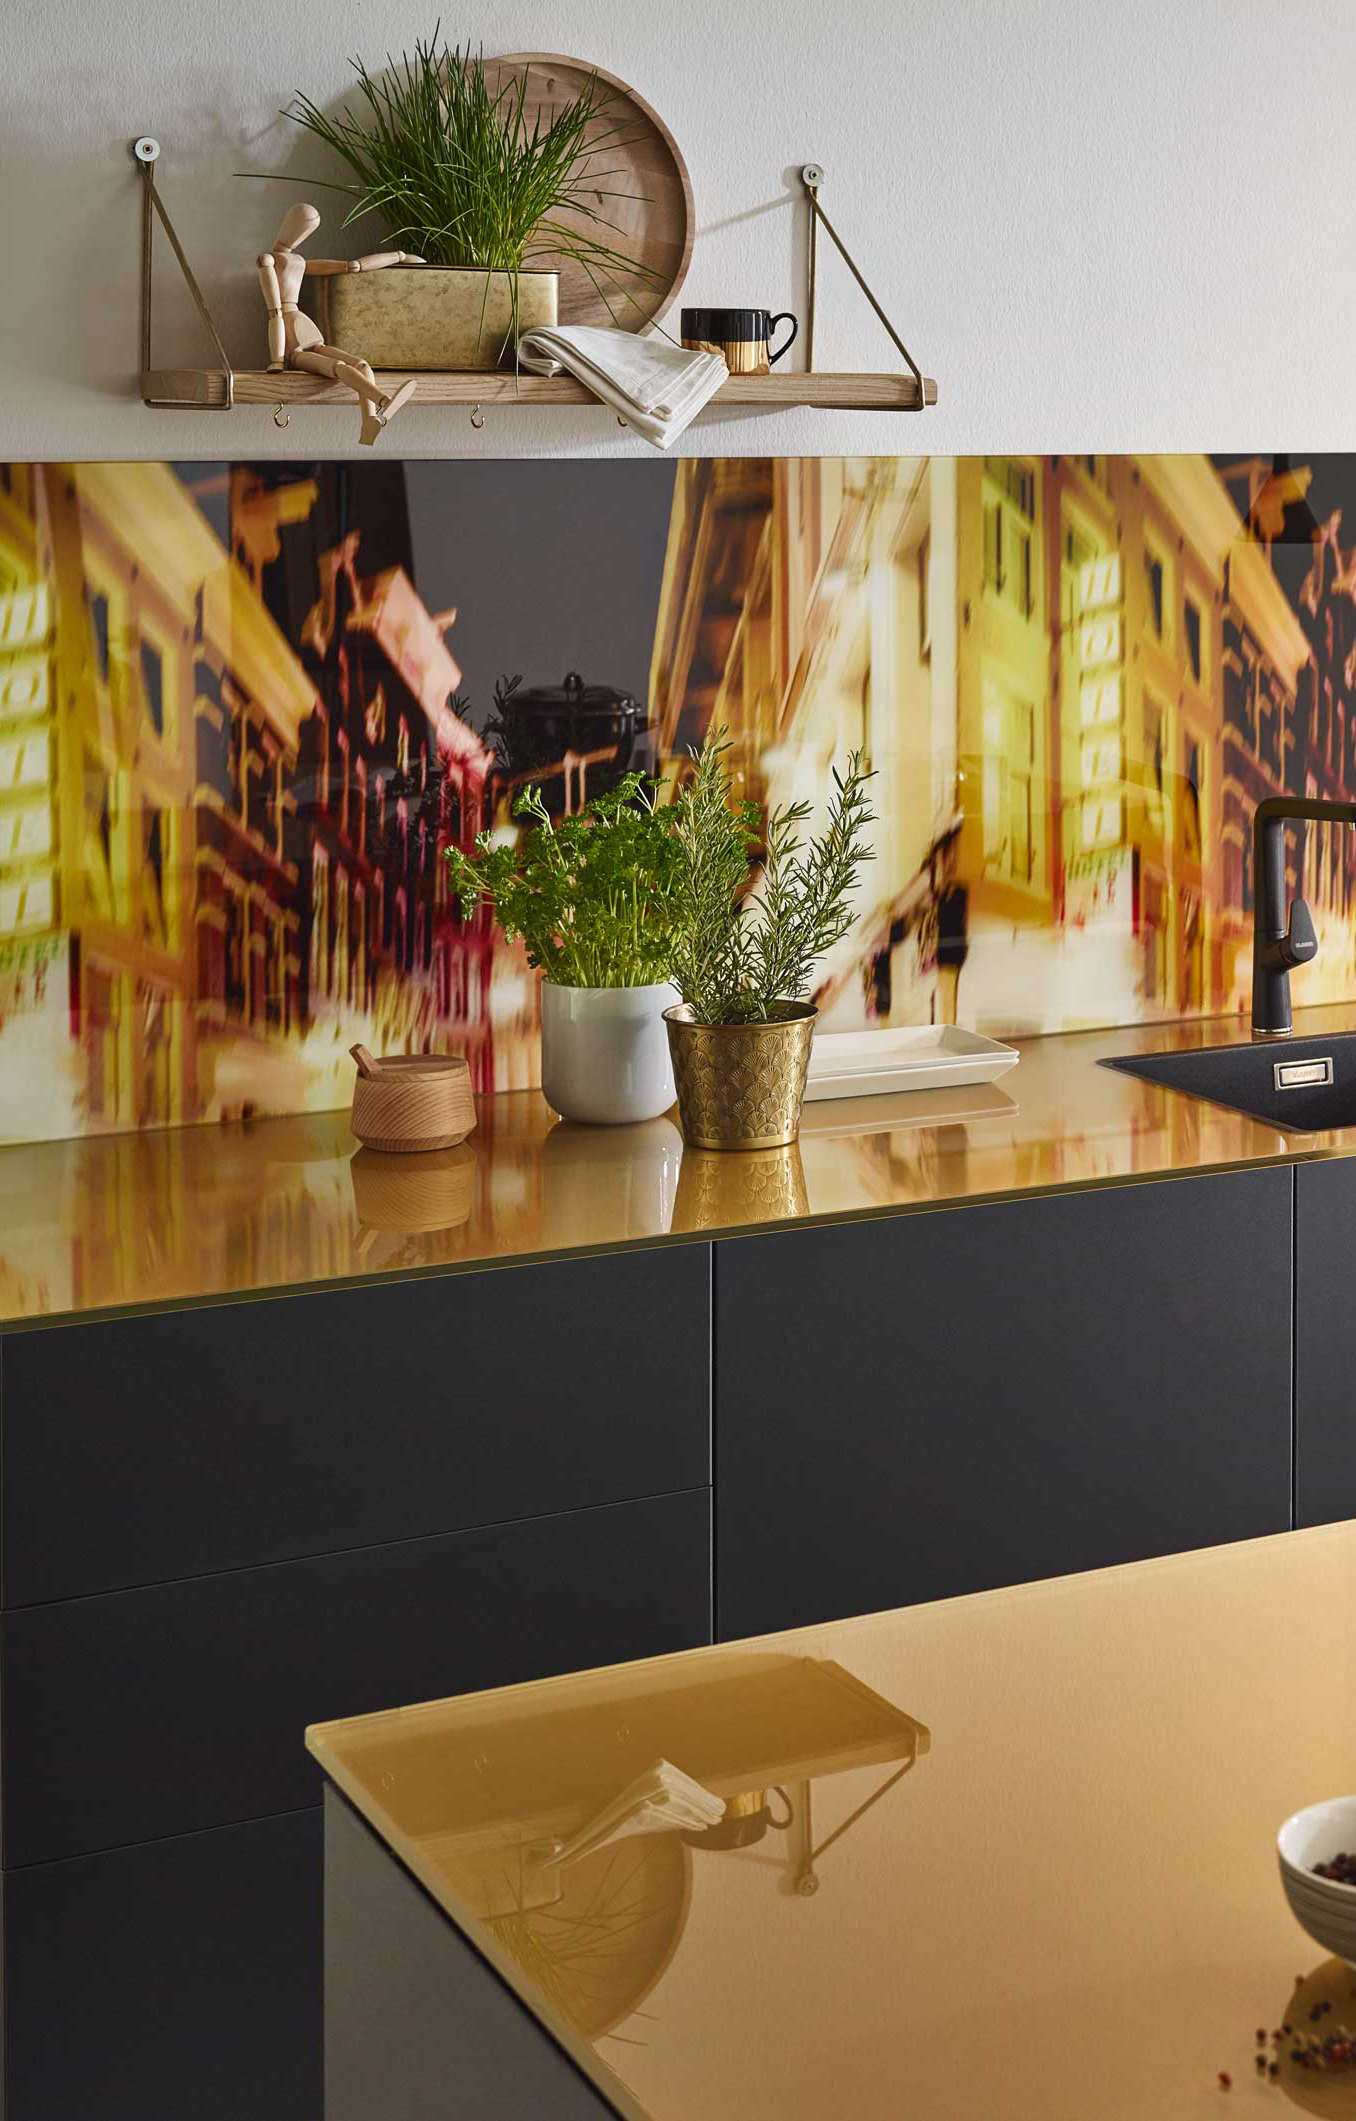 Industrial Stil Küche mit Arbeitsplatte aus Glas im goldenen Dekor 149 Brass und Rückwand im Glasmotiv M64 In the city